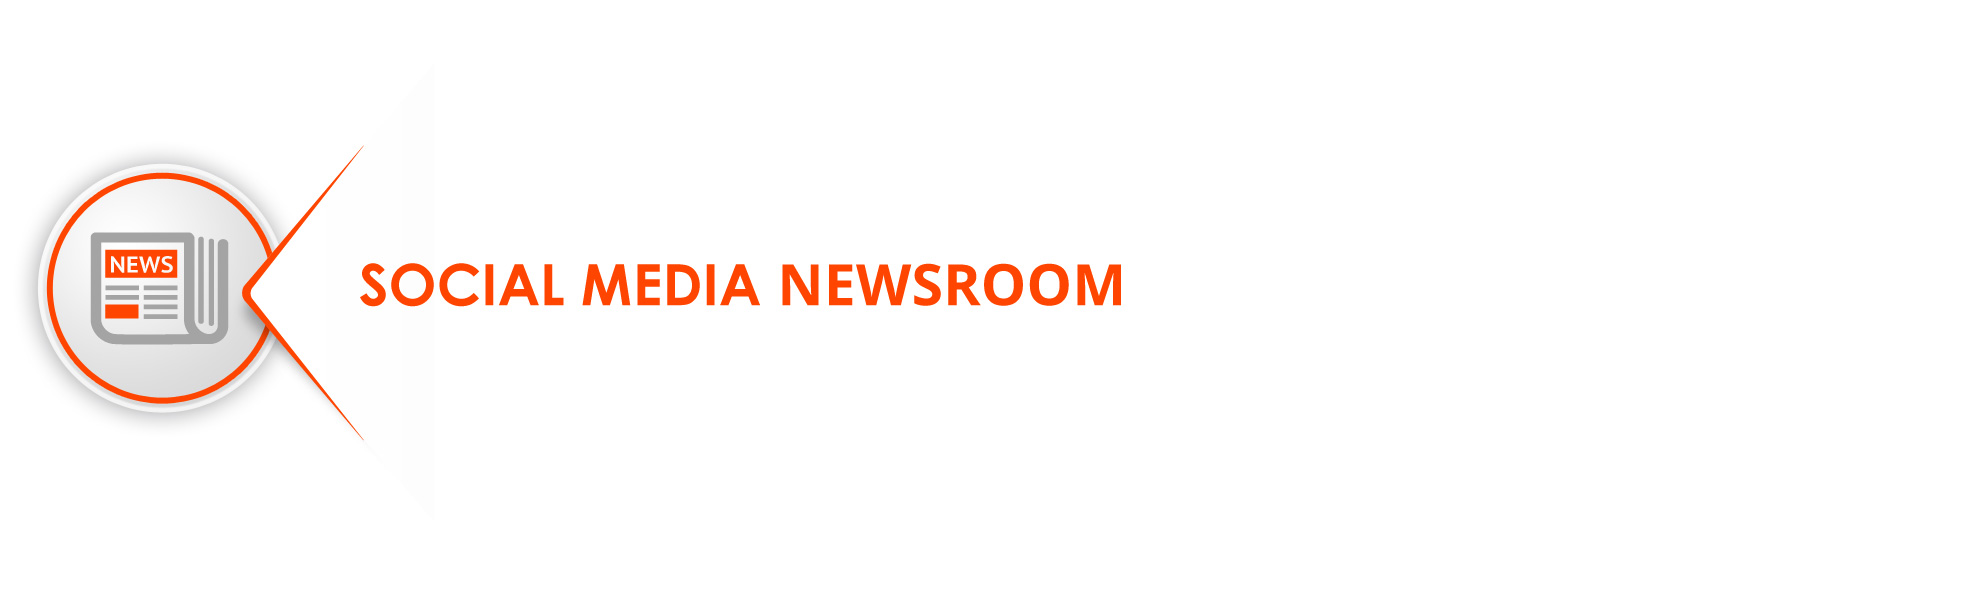 social-media-newsroom-azobit